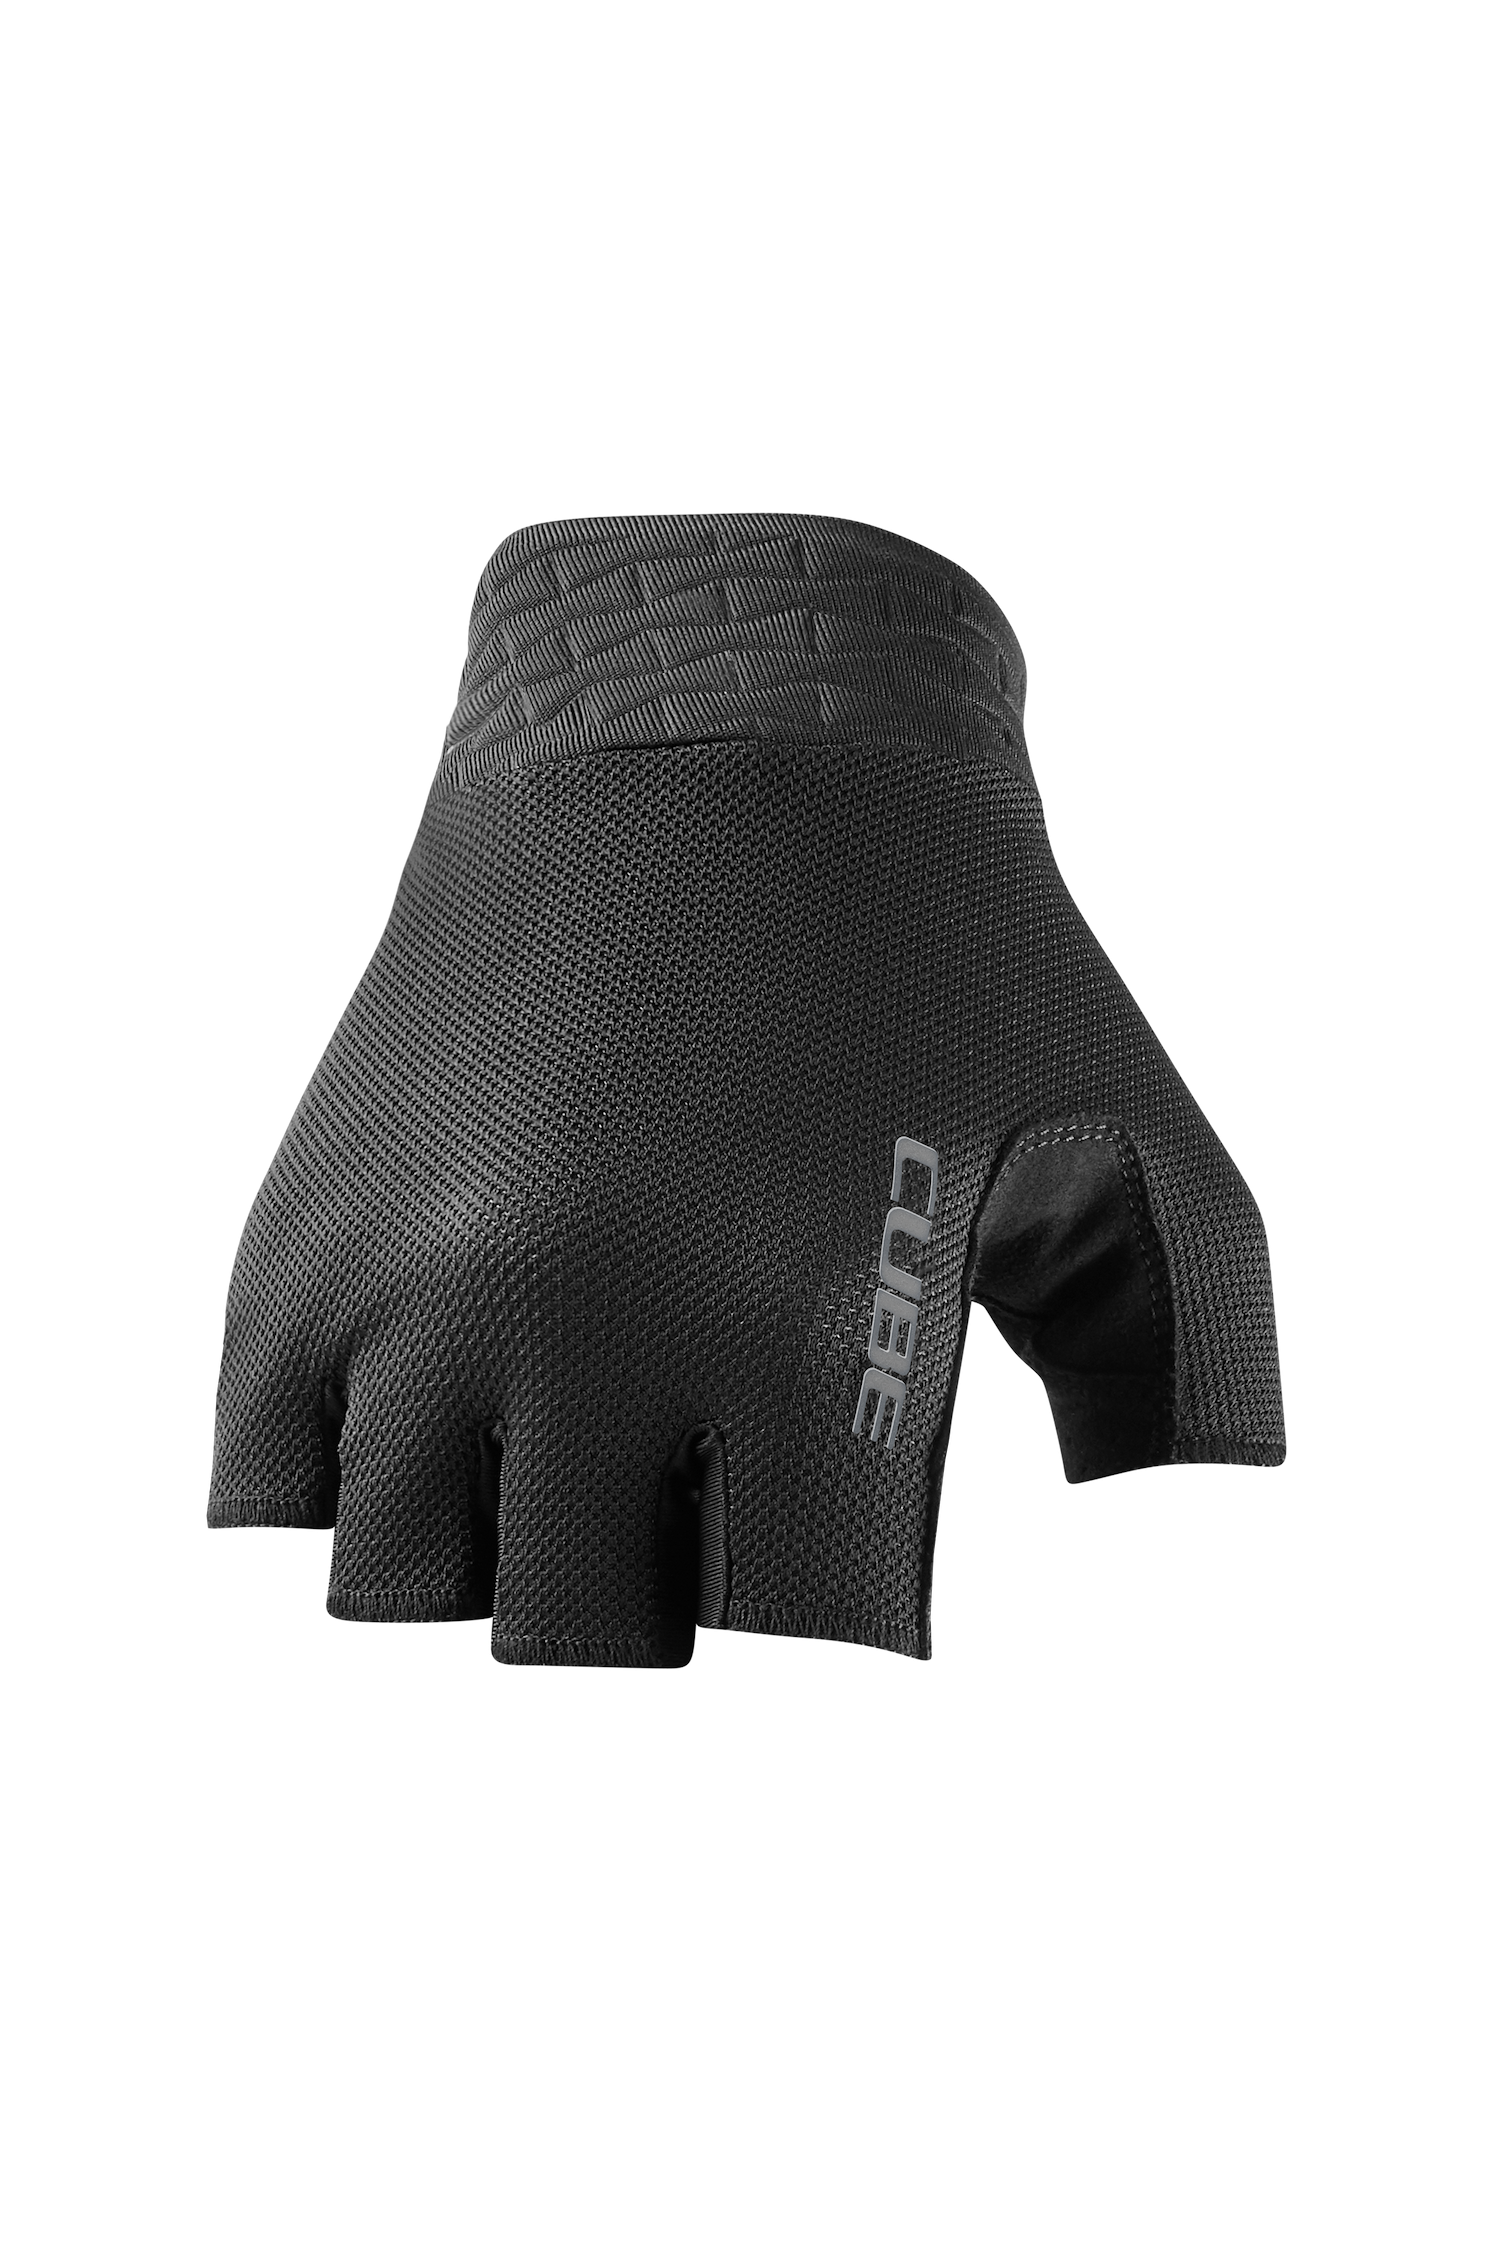 CUBE Handschuhe Performance kurzfinger black